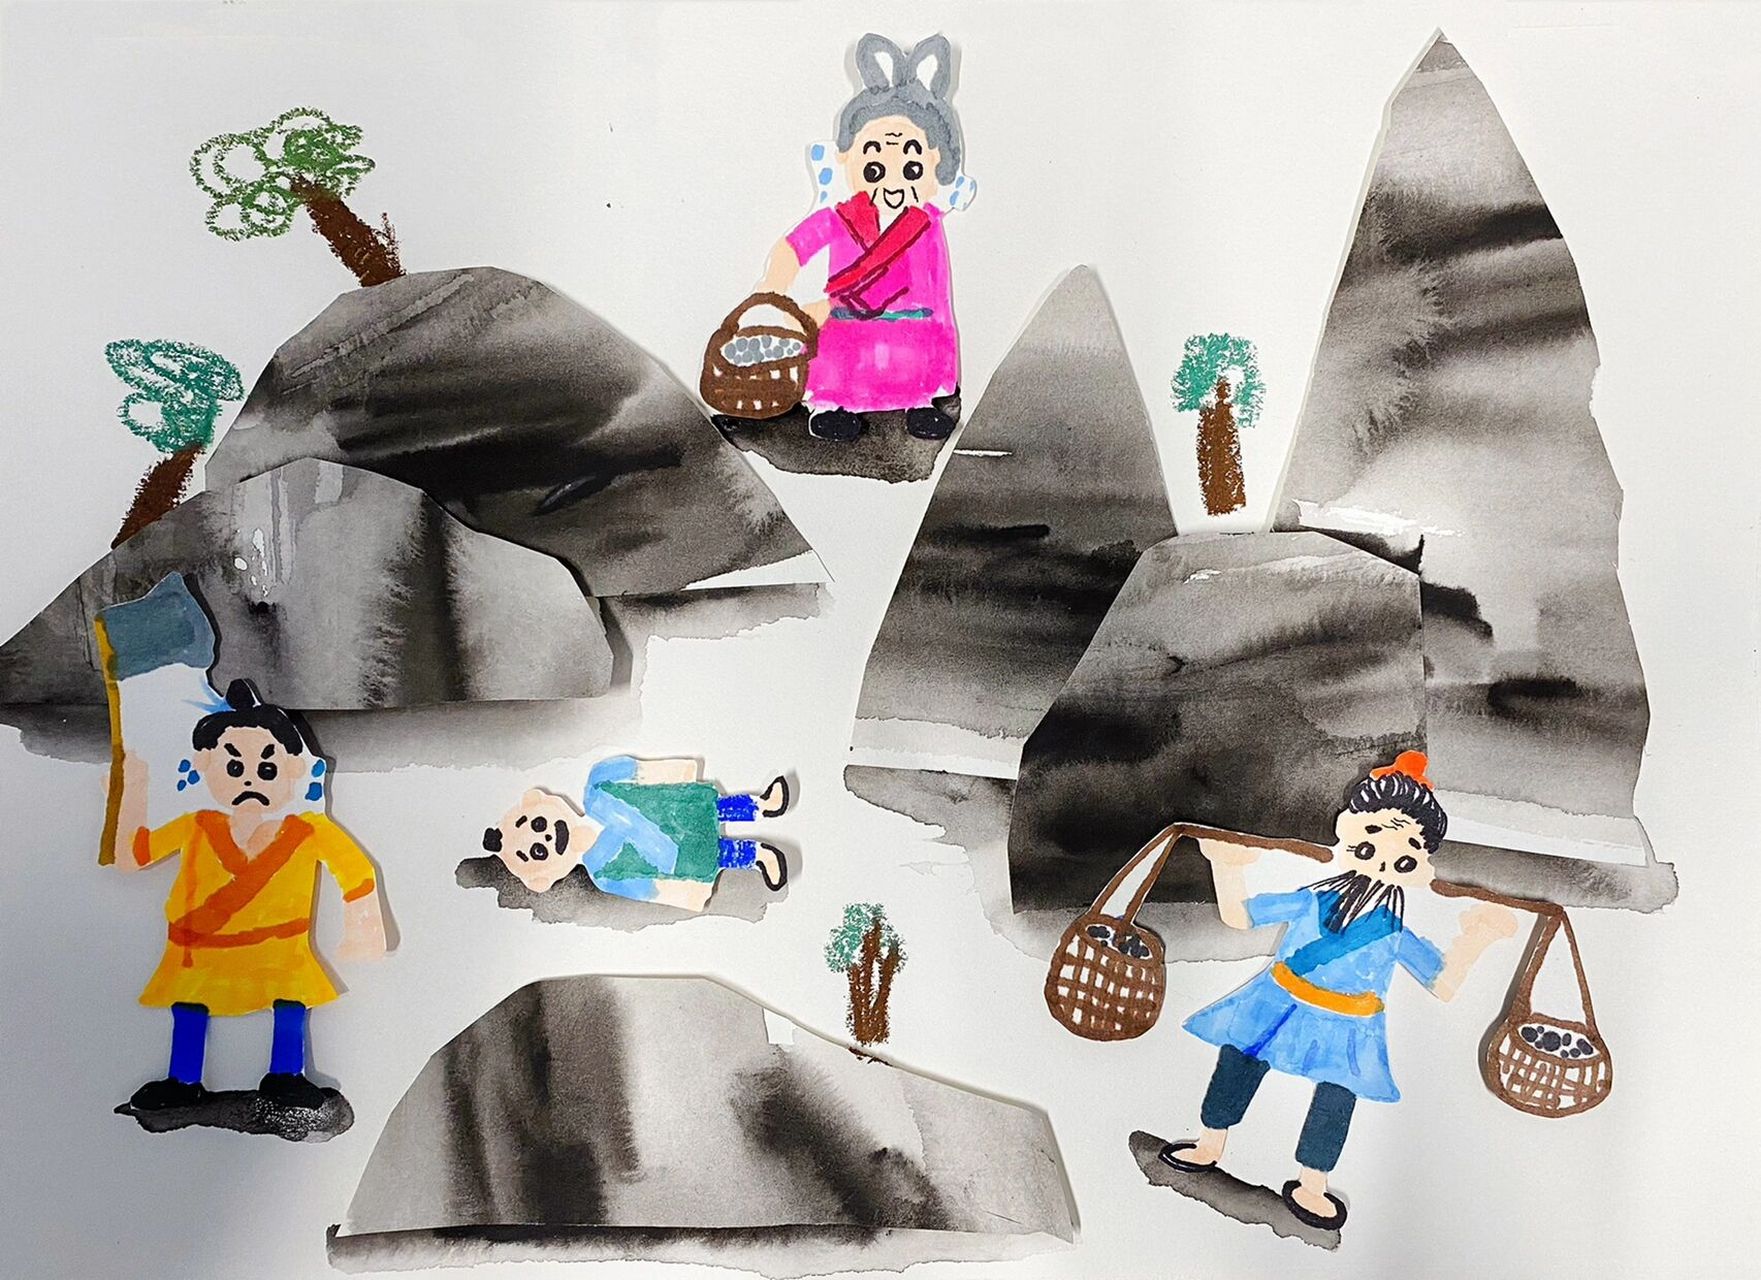 《愚公移山》大班儿童画创意美术少儿美术绘画 适龄:大班 时间:90分钟